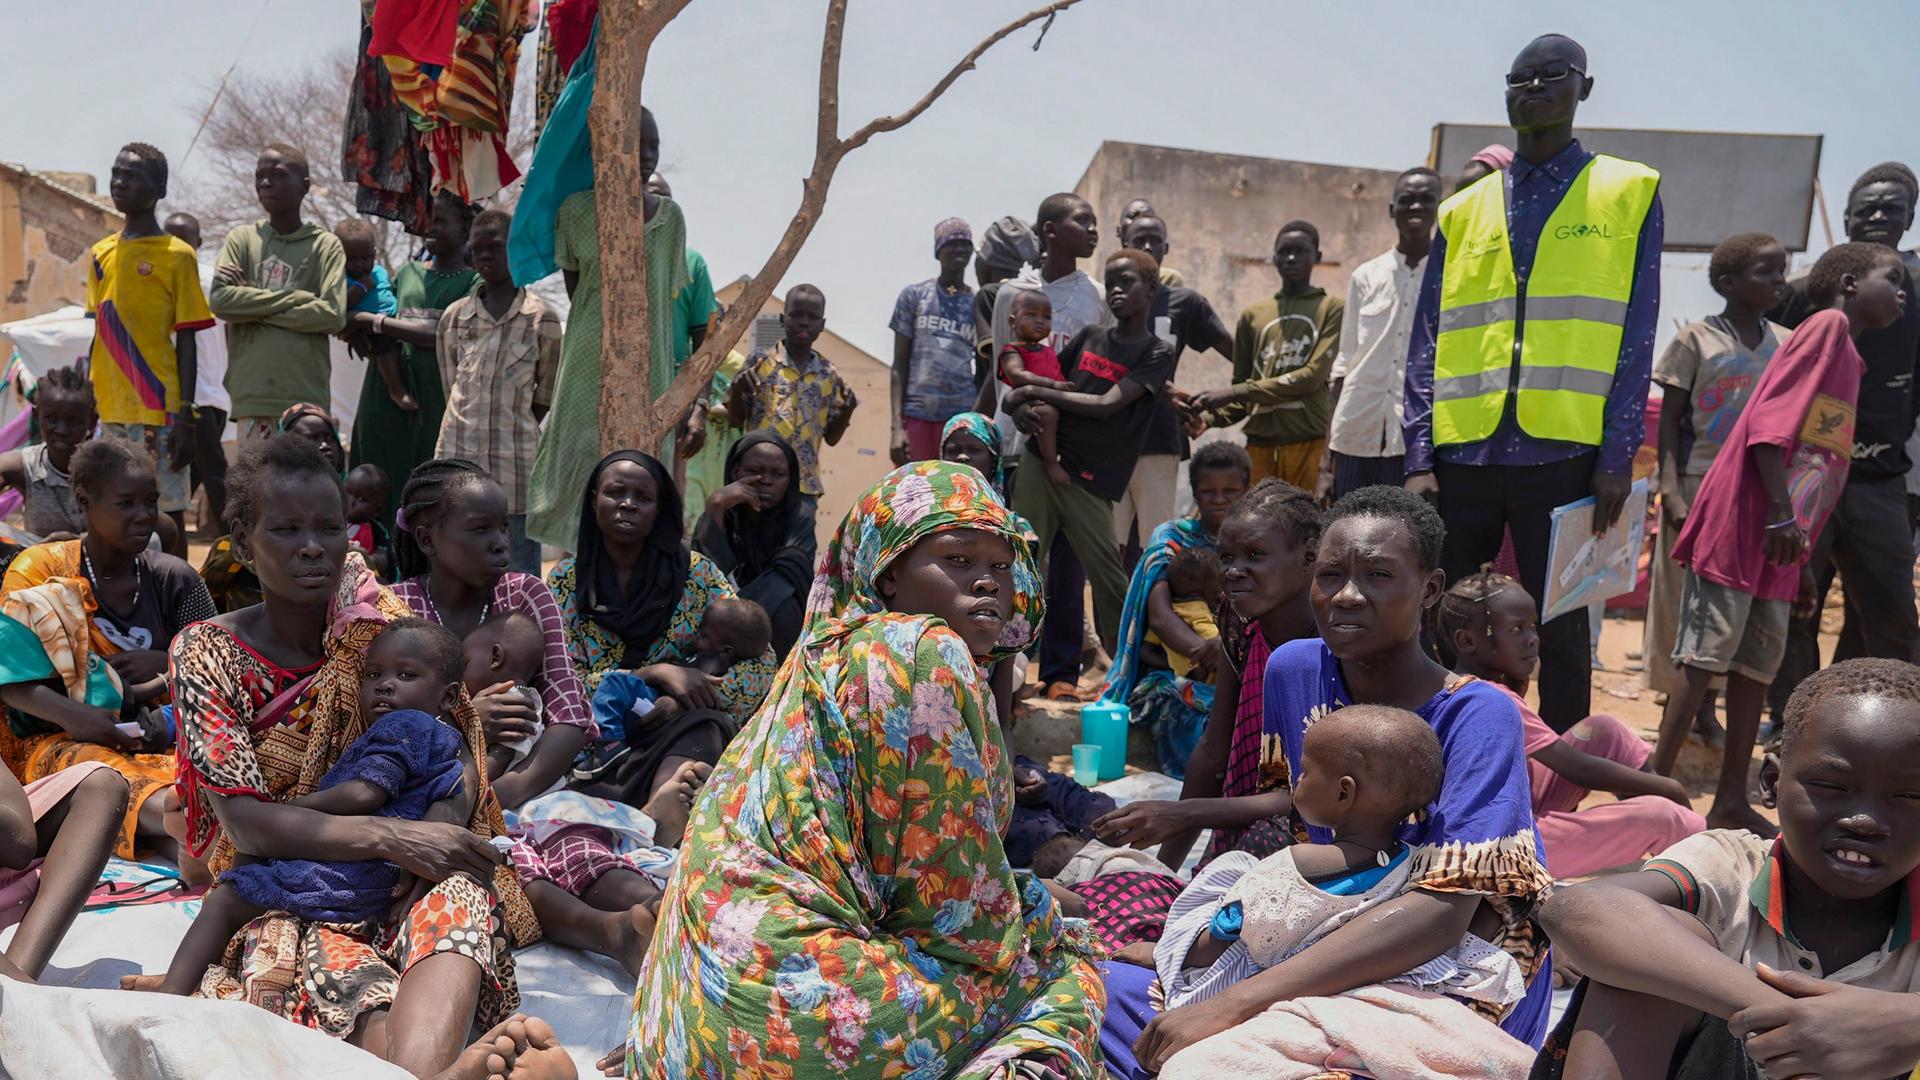 Südsudanesen, die aus dem Sudan geflohen sind, sitzen vor einer Ernährungsklinik in einem Transitzentrum.